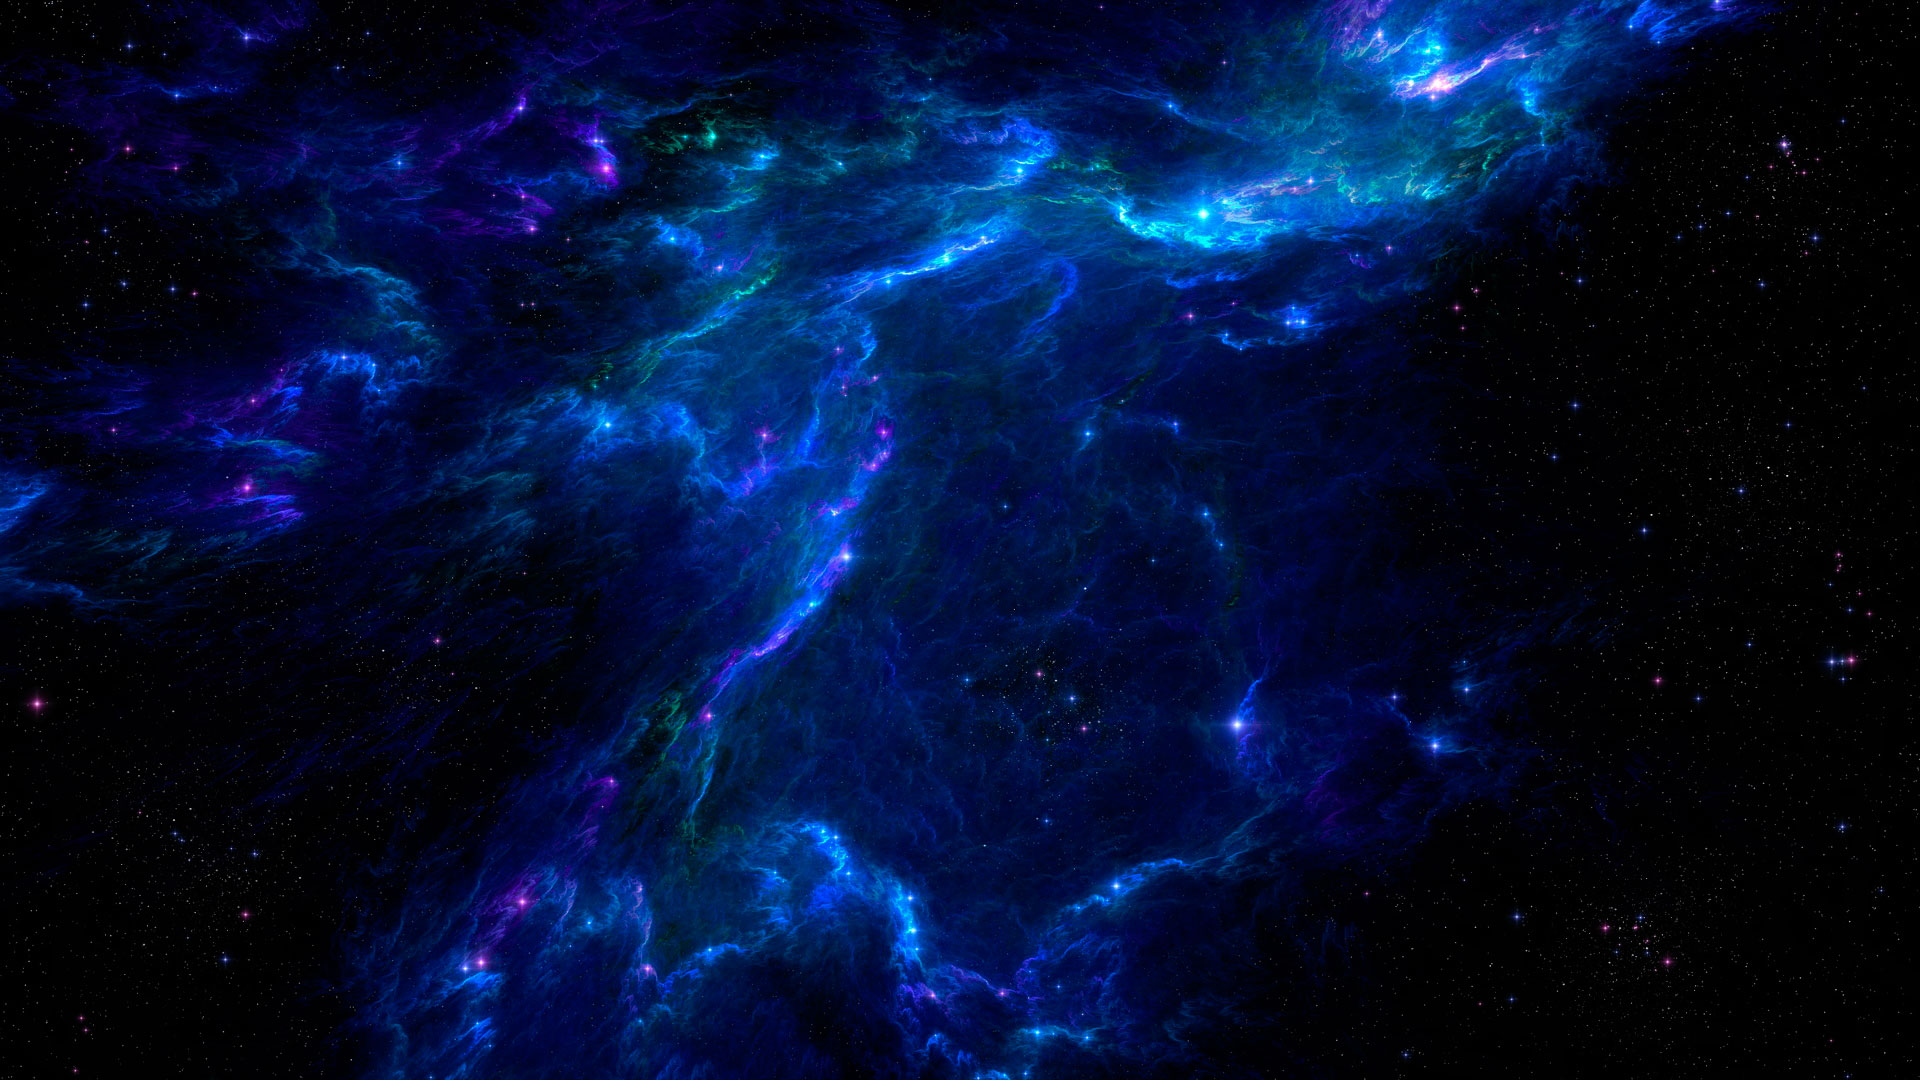 صورة لغبار كوني و سحب في الفضاء باللون الازرق و الأسود و البنفسجي و تجوم كثيرة جدا داخل هته السحب اضواء ساطعة